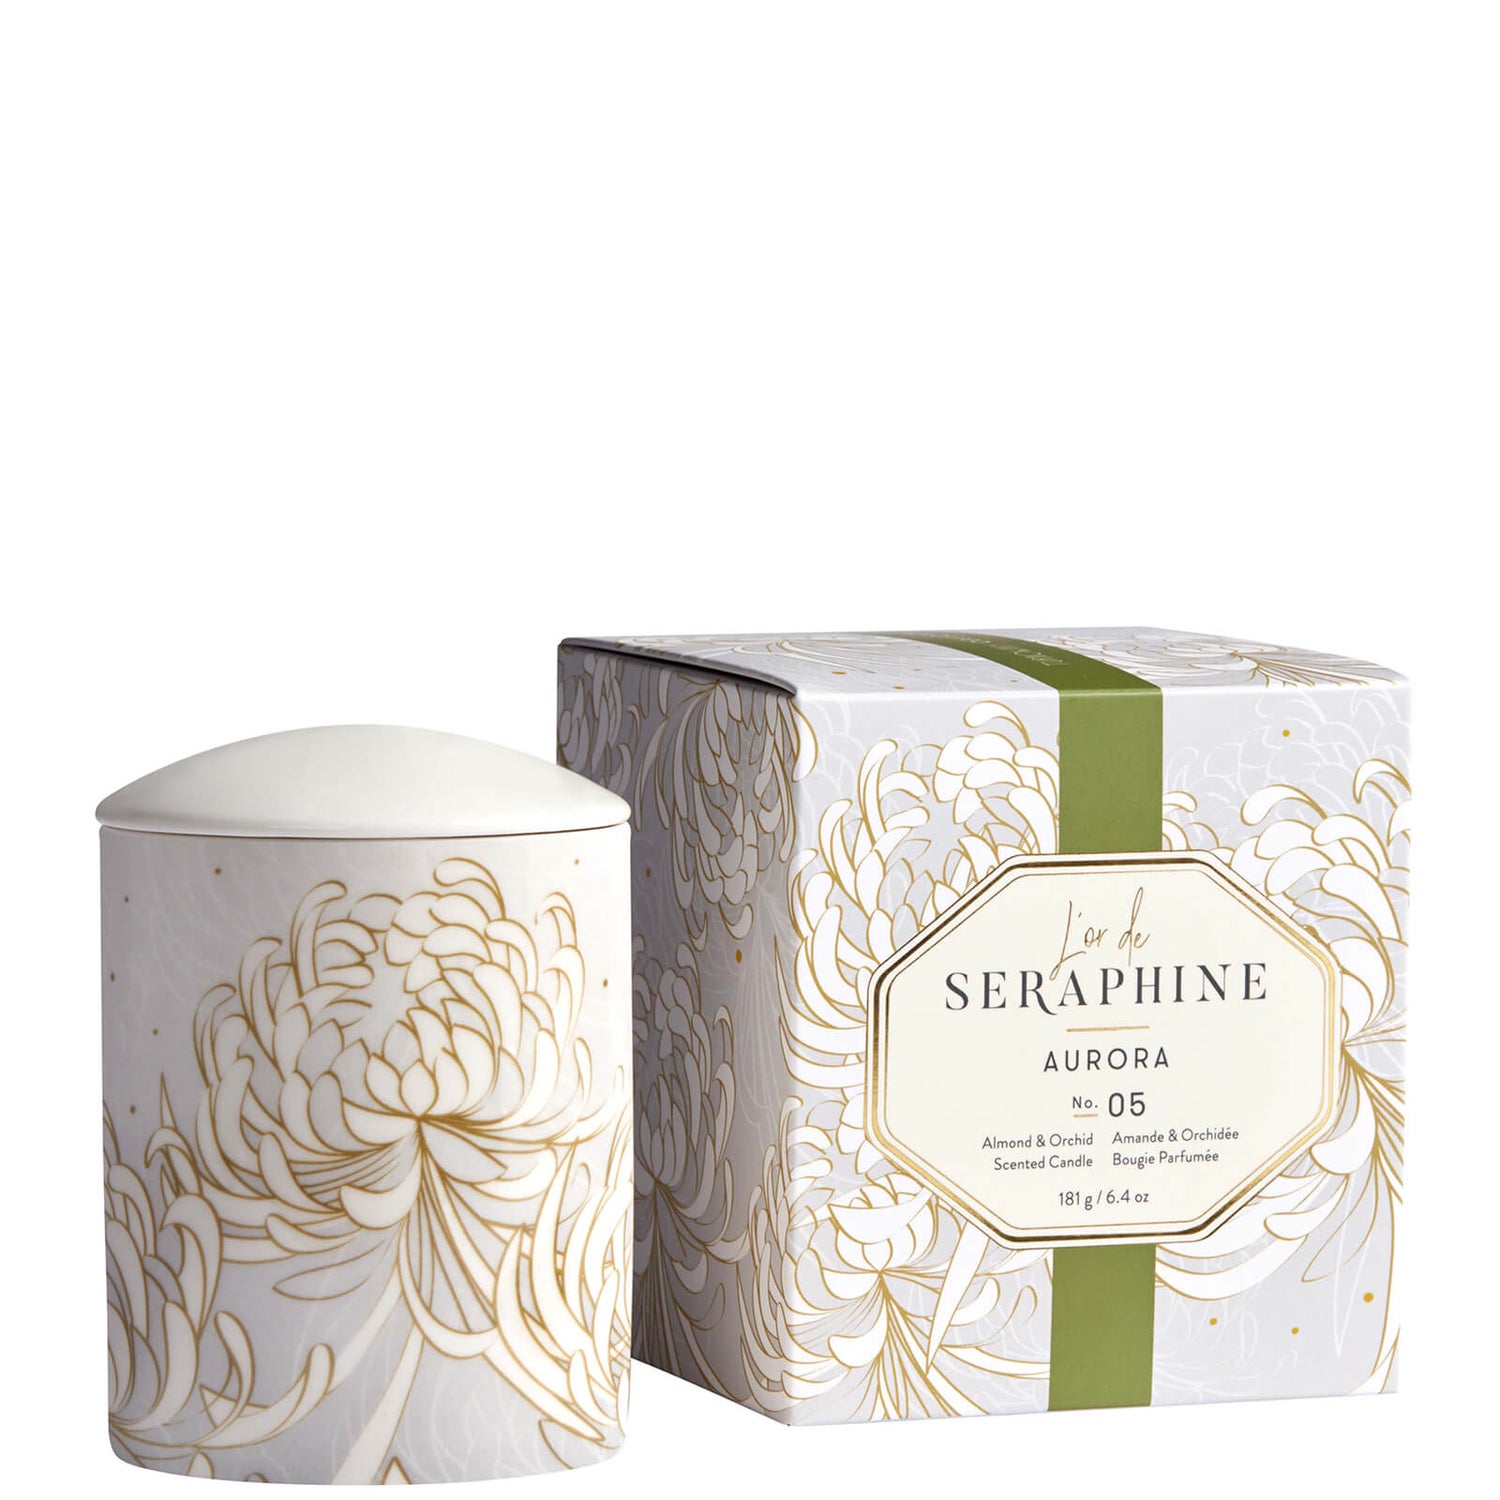 L'or de Seraphine Aurora Medium Ceramic Candle 6.4 oz - Dermstore